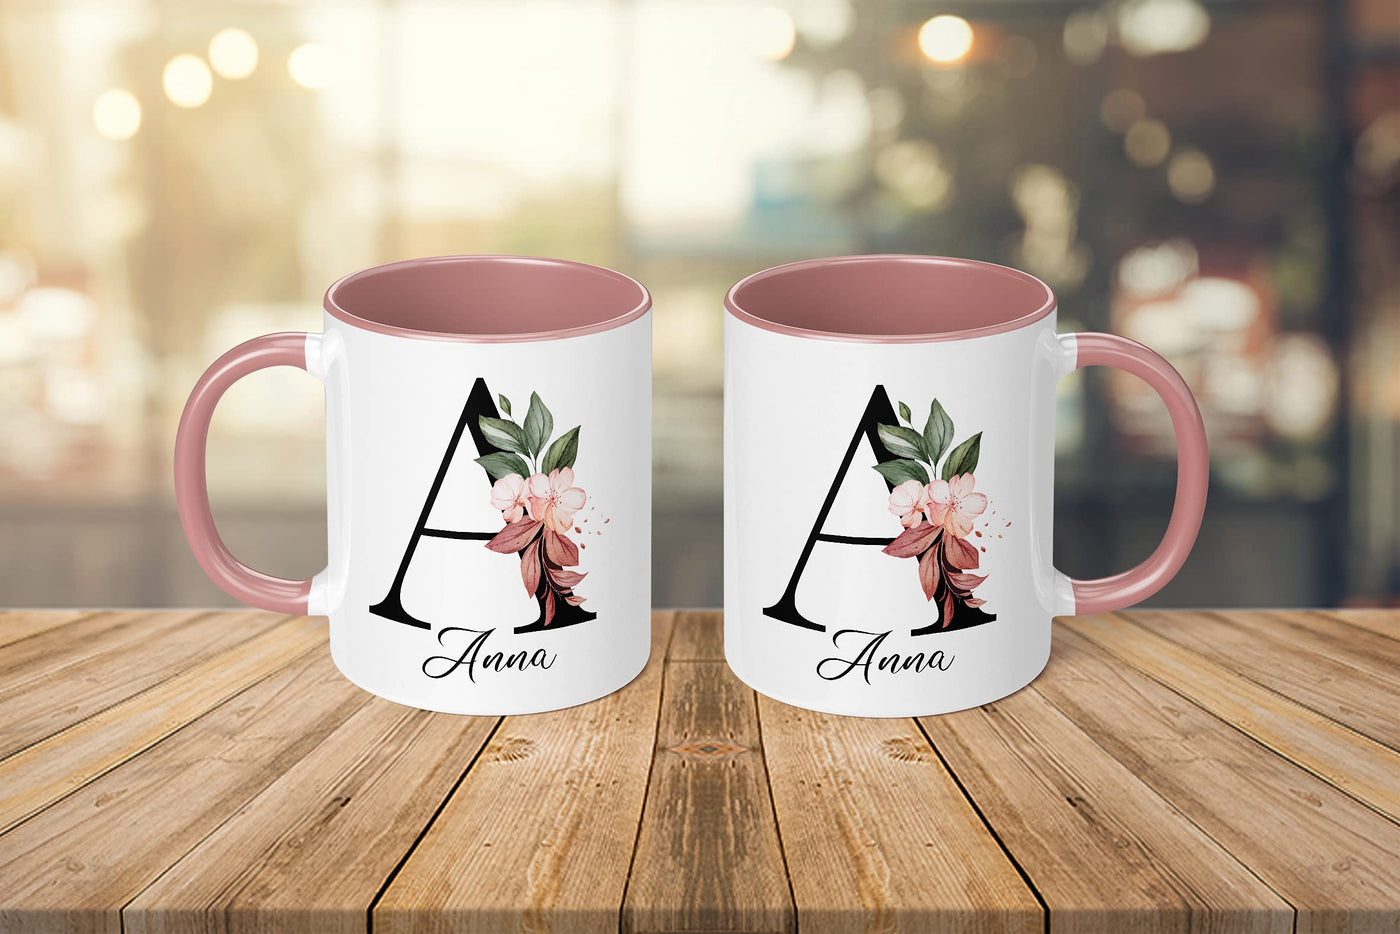 Personalisierte Tasse - Namens-Tasse mit Blumen Motiv - mit Ihrem Anfangsbuchstaben und Namen - personalisiert - Geburtstag - Kaffeetasse - beidseitig bedruckt - Geschenke für Frauen (Rosa)